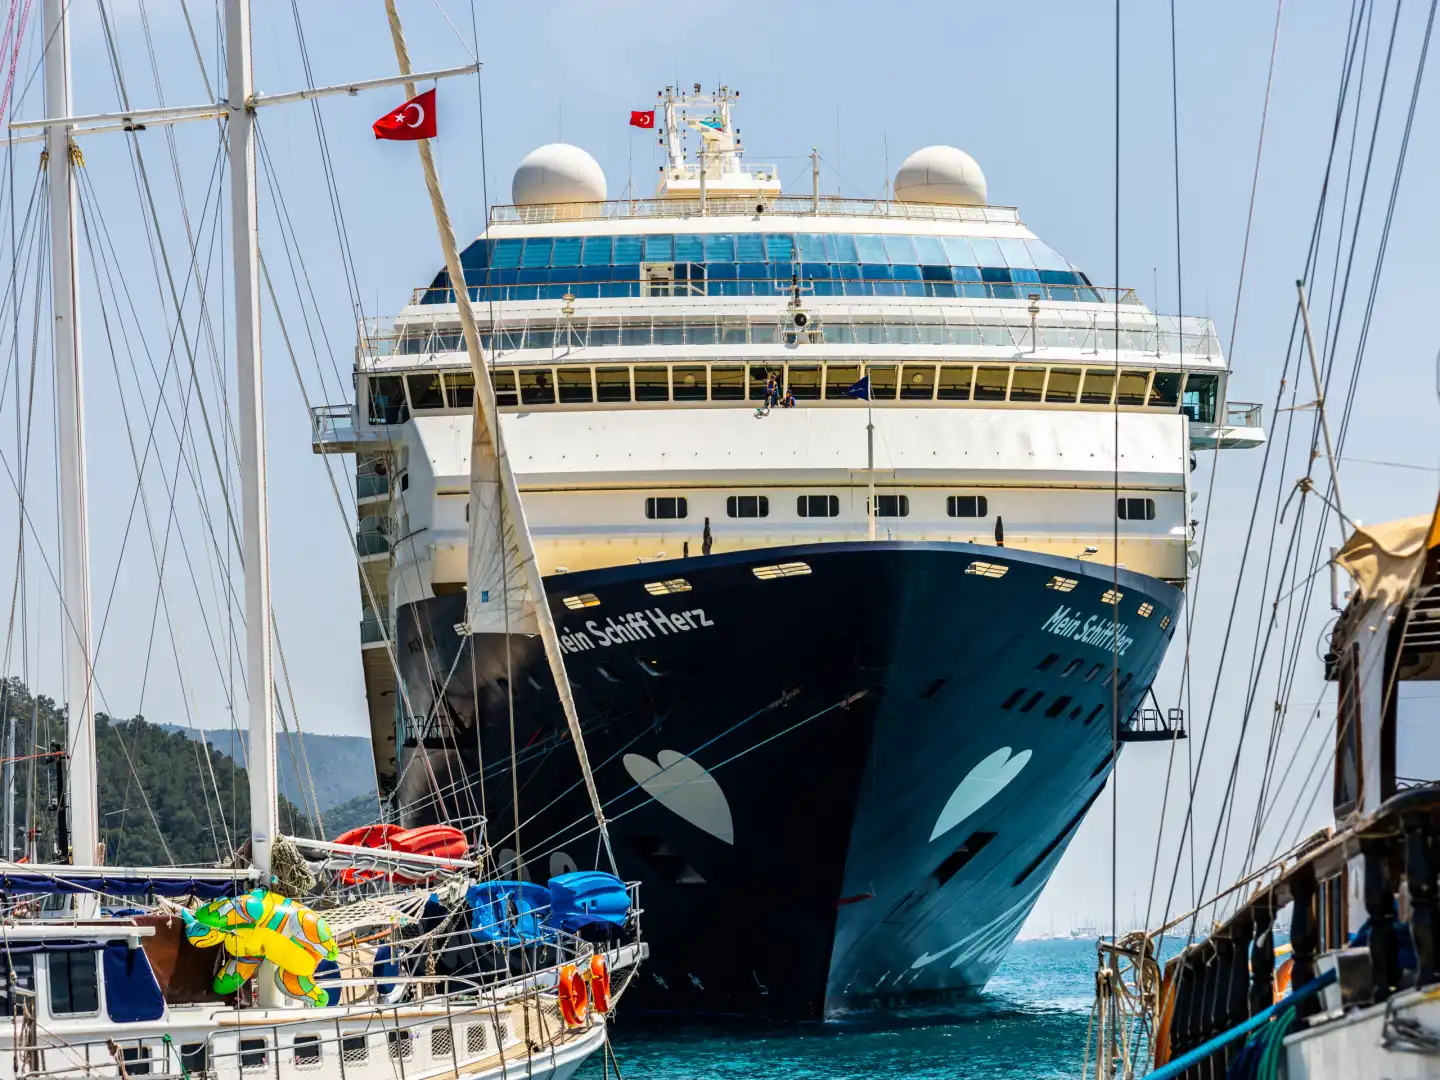 Marmaris, Türkei - Mai 01, 2022 - Das Kreuzfahrtschiff "Mein Schiff Herz" im türkischen Hafen von Marmaris